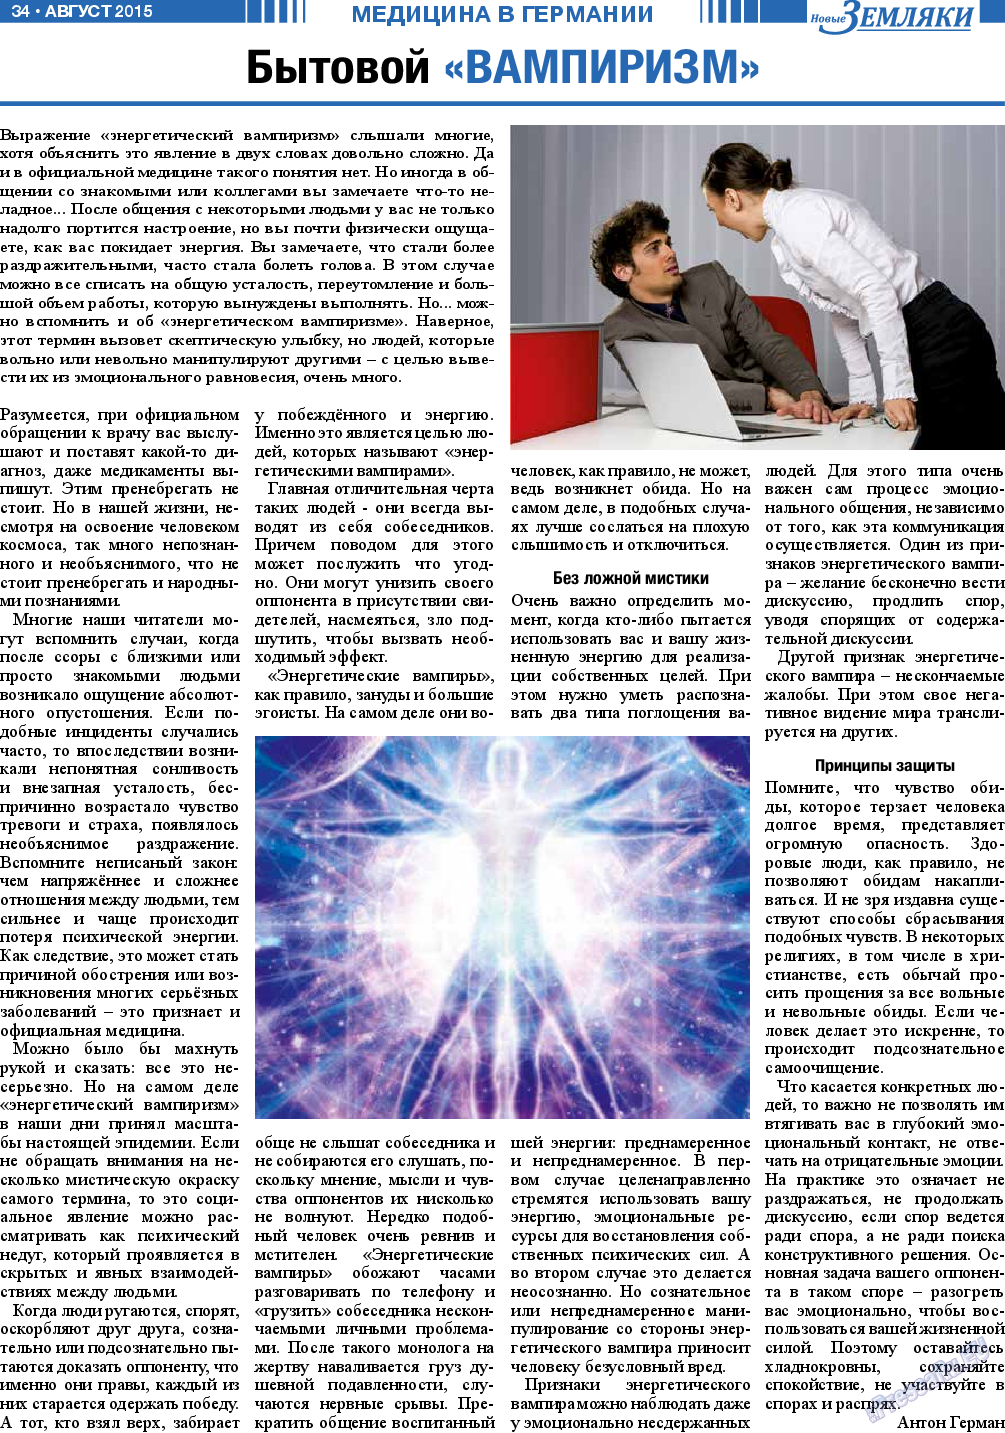 Новые Земляки, газета. 2015 №8 стр.34